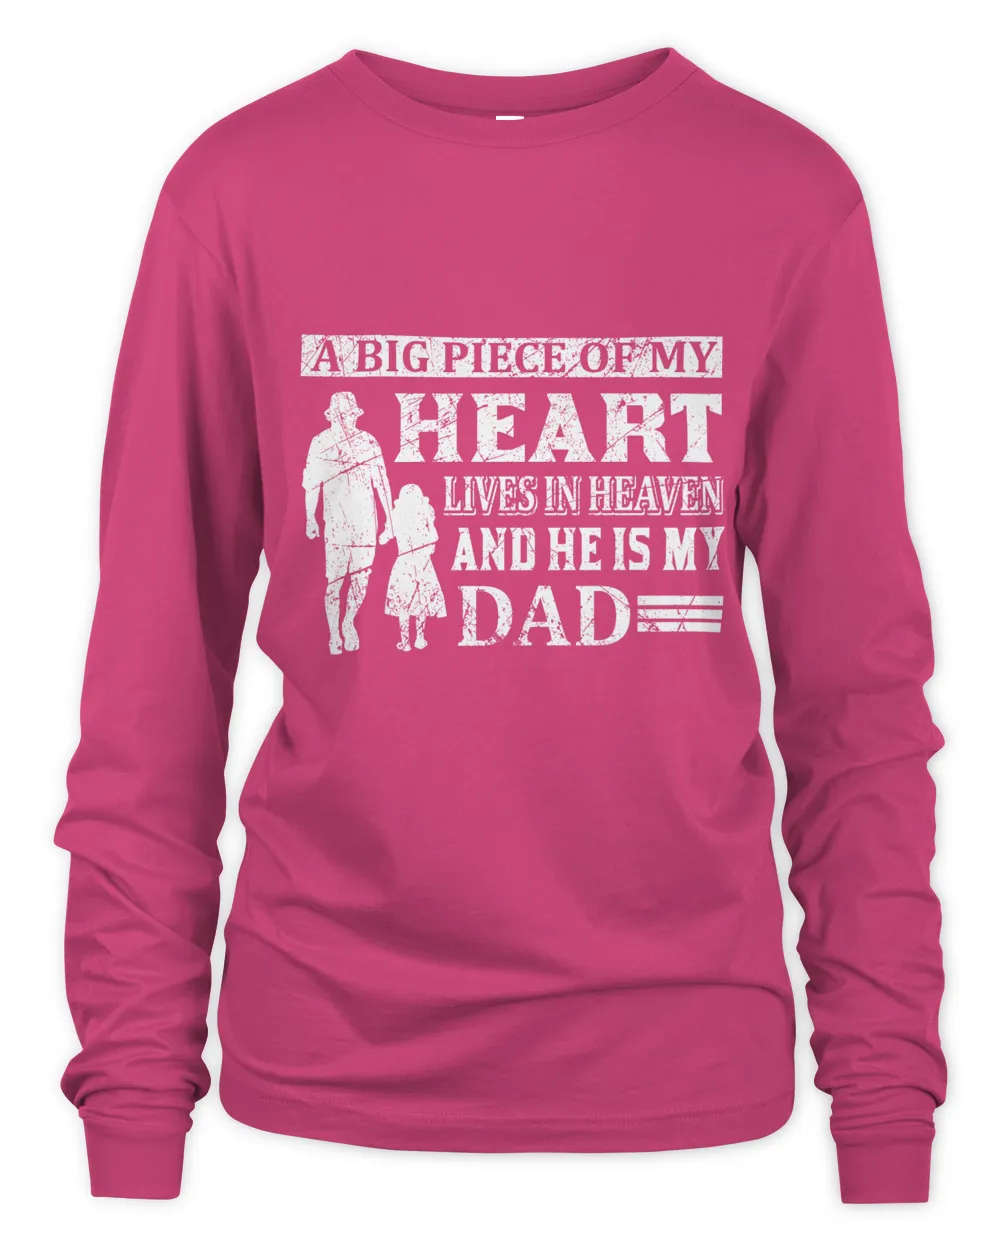 Father's Day Gifts, Father's Day Shirts, Father's Day Gift Ideas, Father's Day Gifts 2022, Gifts for Dad (72)